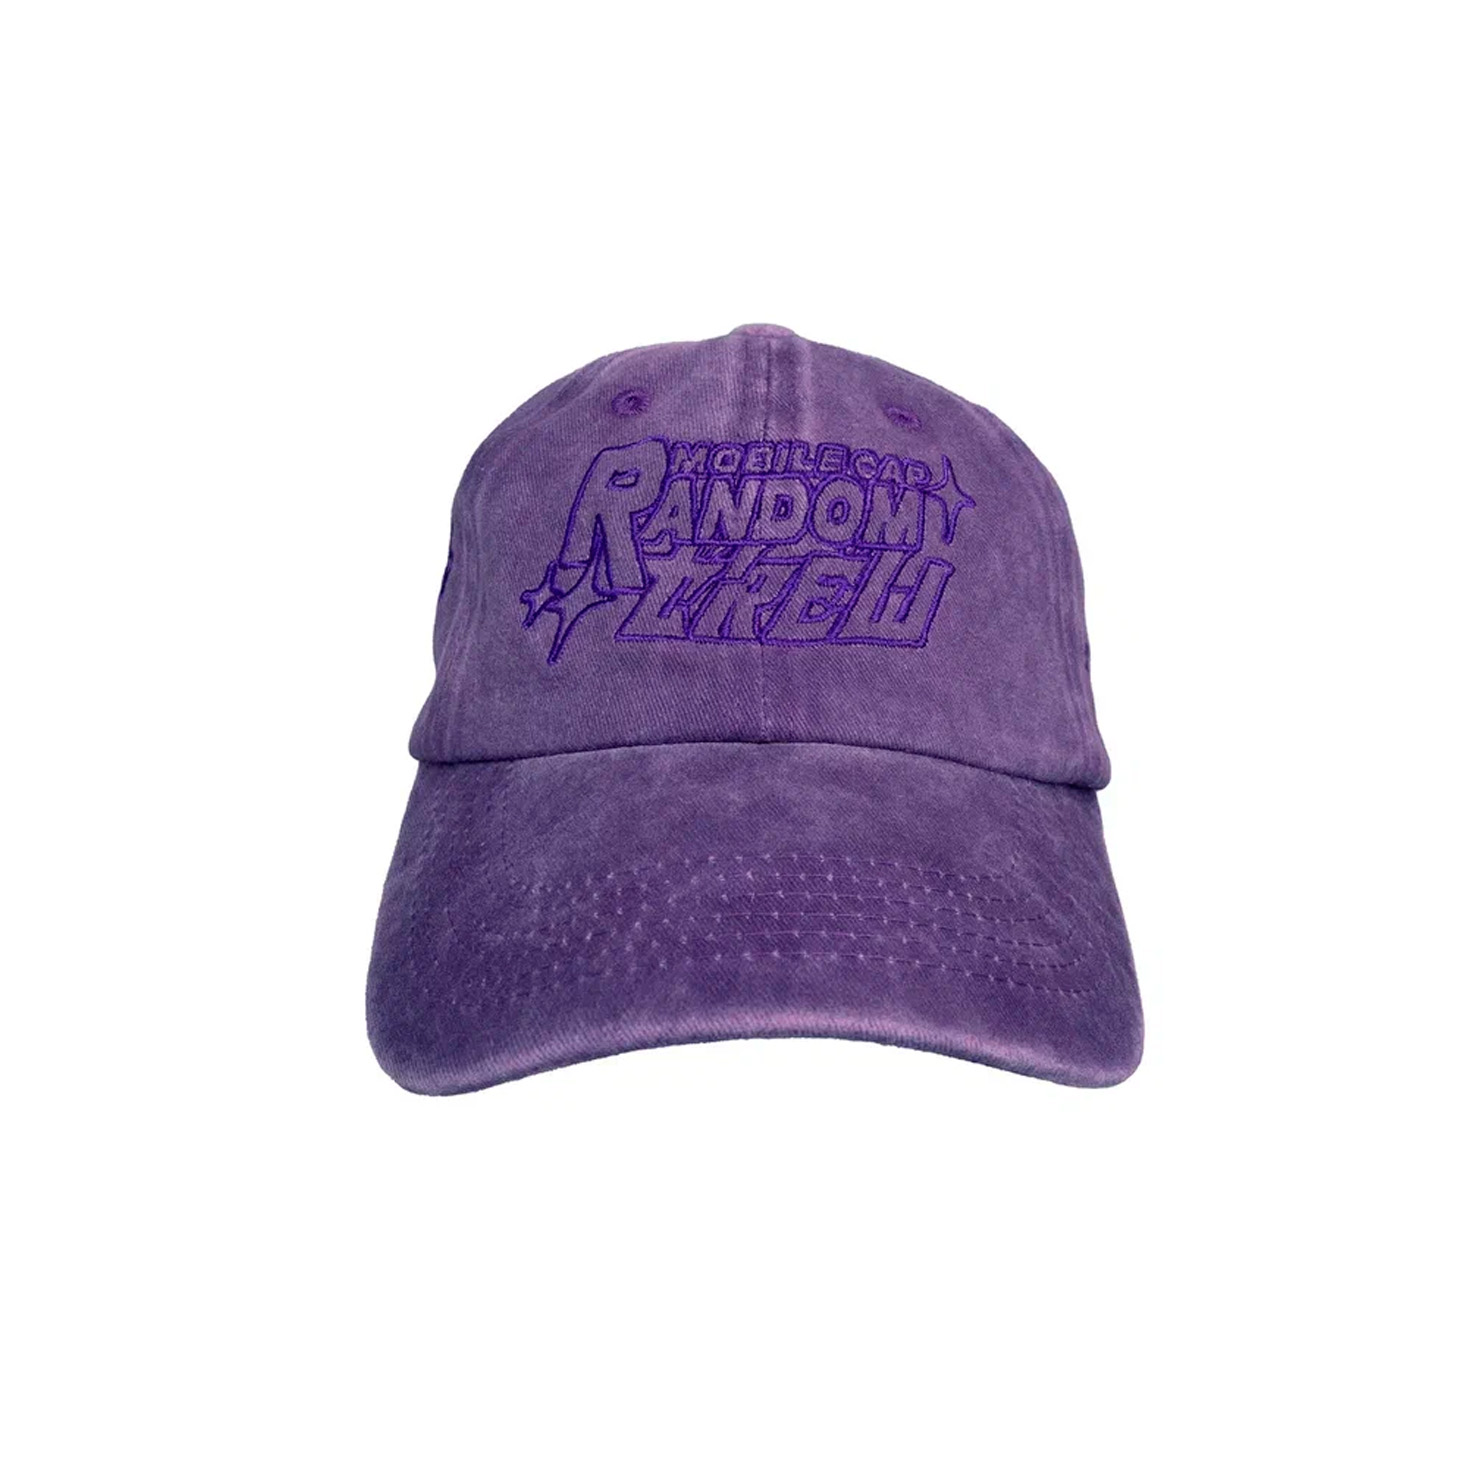 RUNDAM BLK CAP RNDMCREW, размер Один размер, цвет фиолетовый RNCP23001 - фото 2